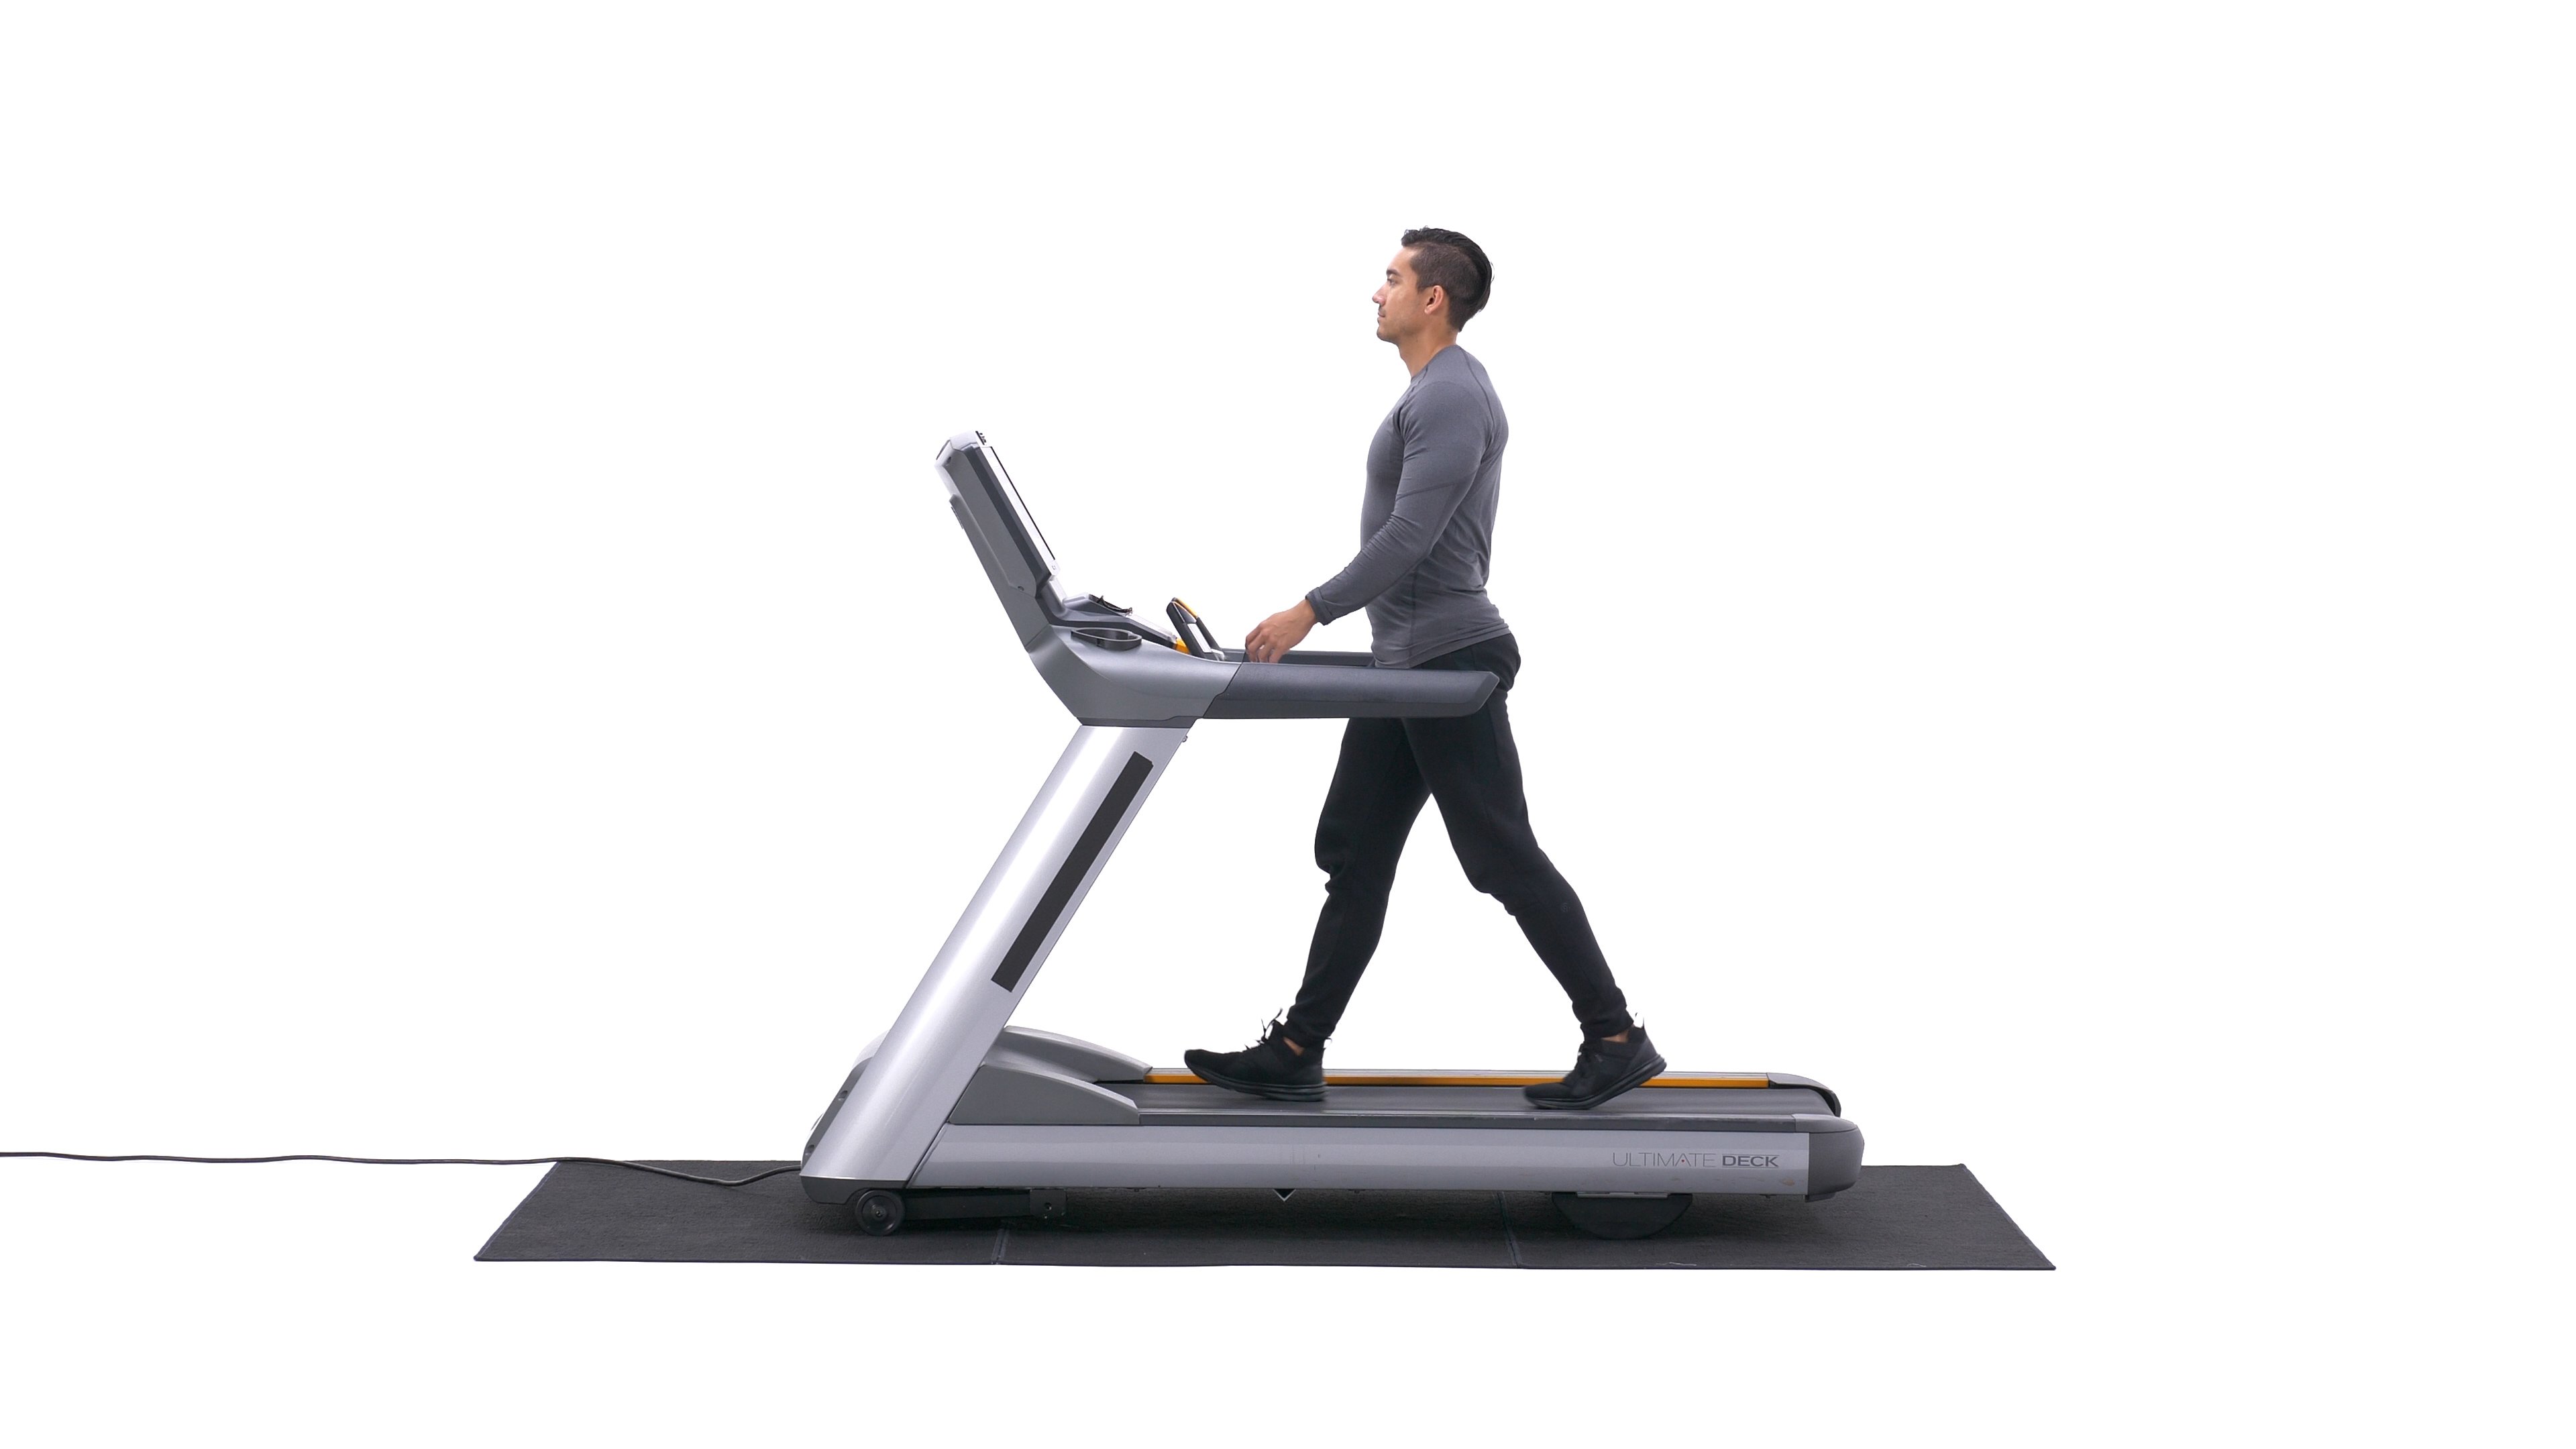 Treadmill posture